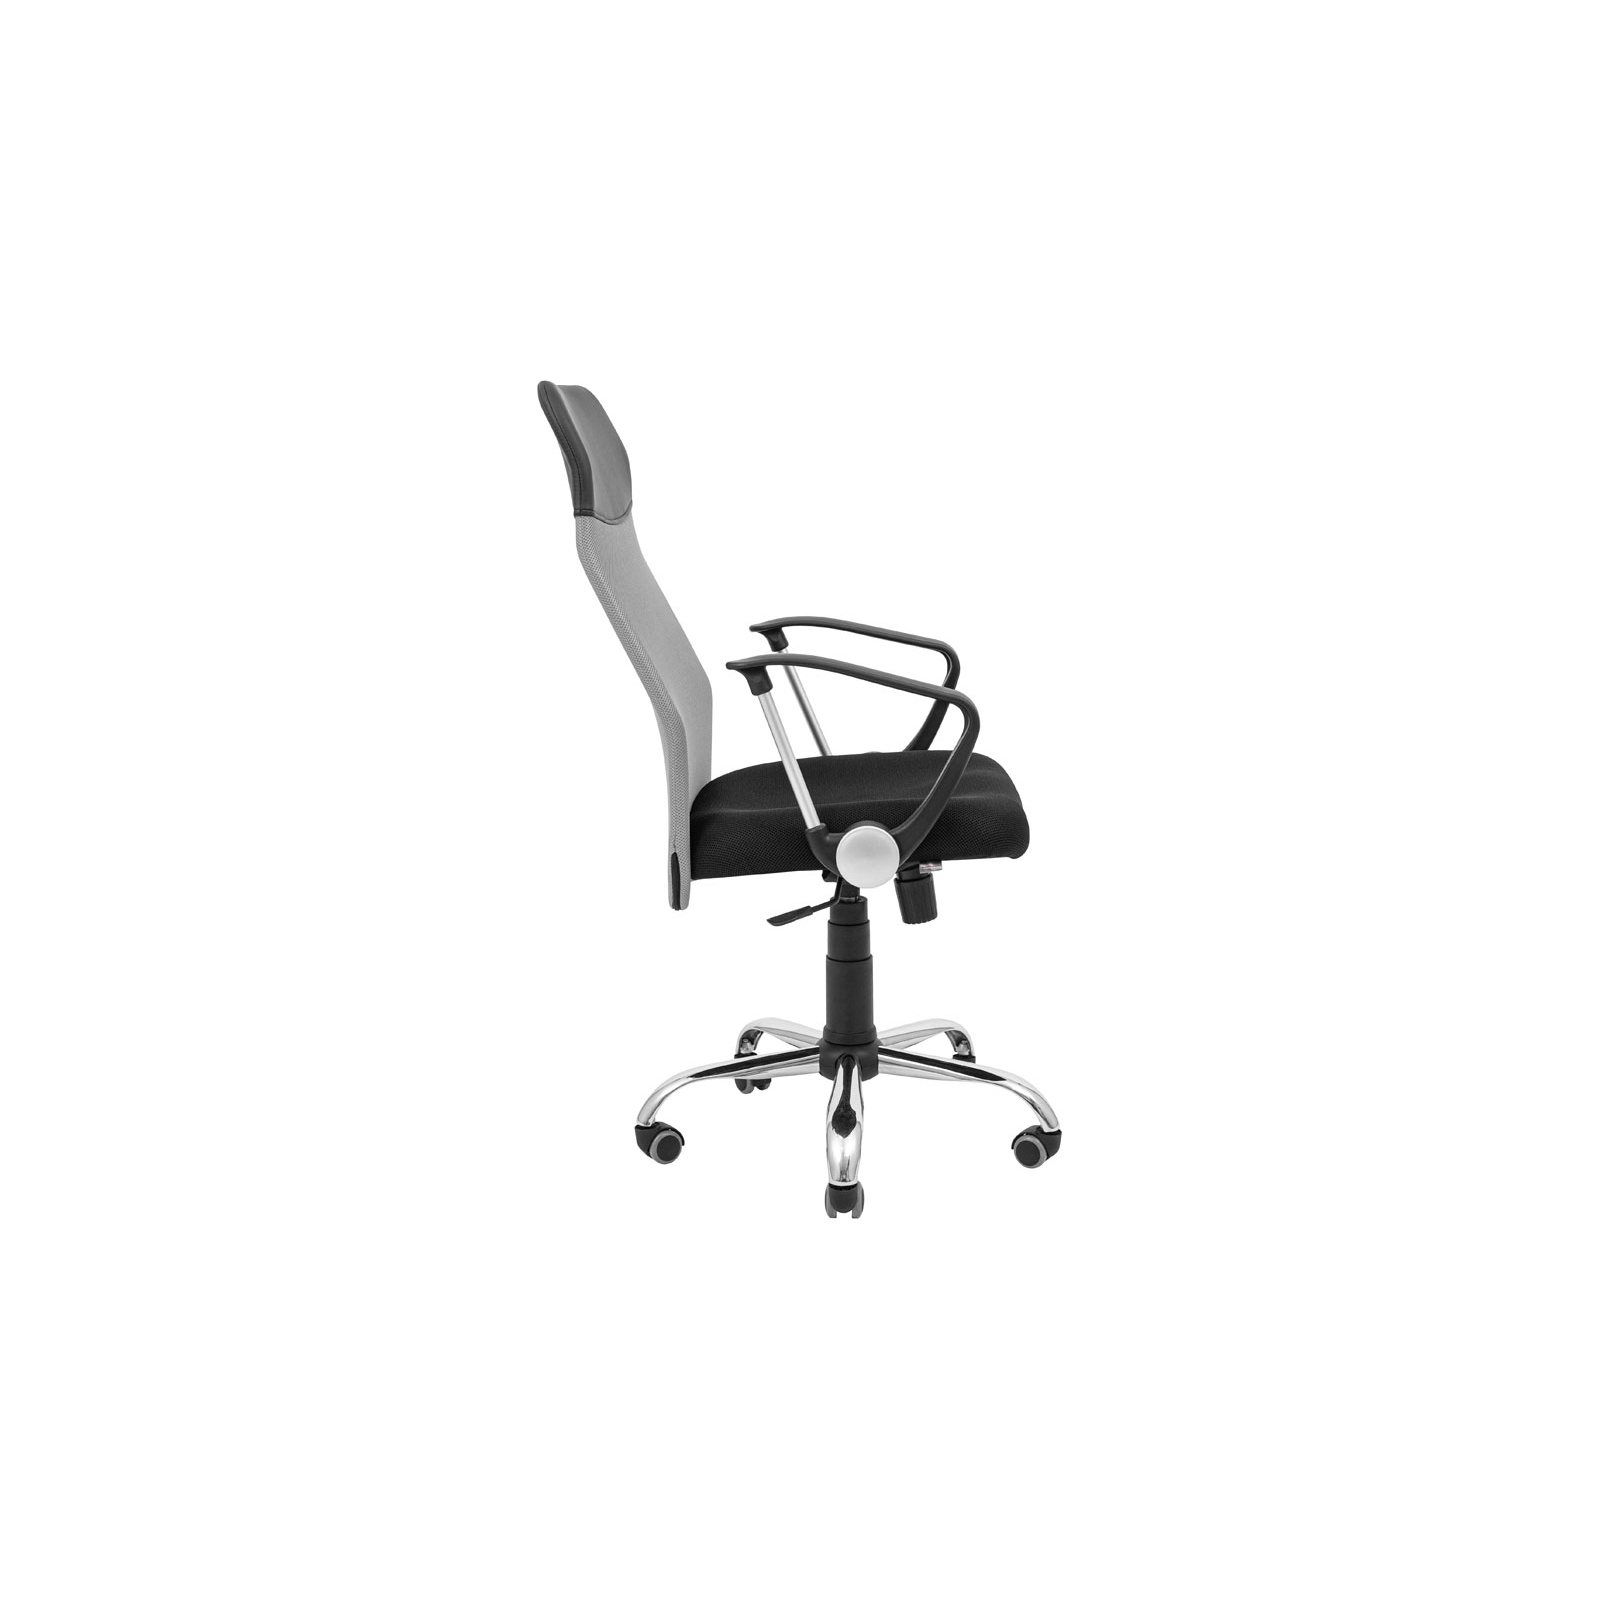 Офисное кресло Richman Ультра Ю Хром M-1 (Tilt) Сетка черная+зеленая (ADD0003103) изображение 3